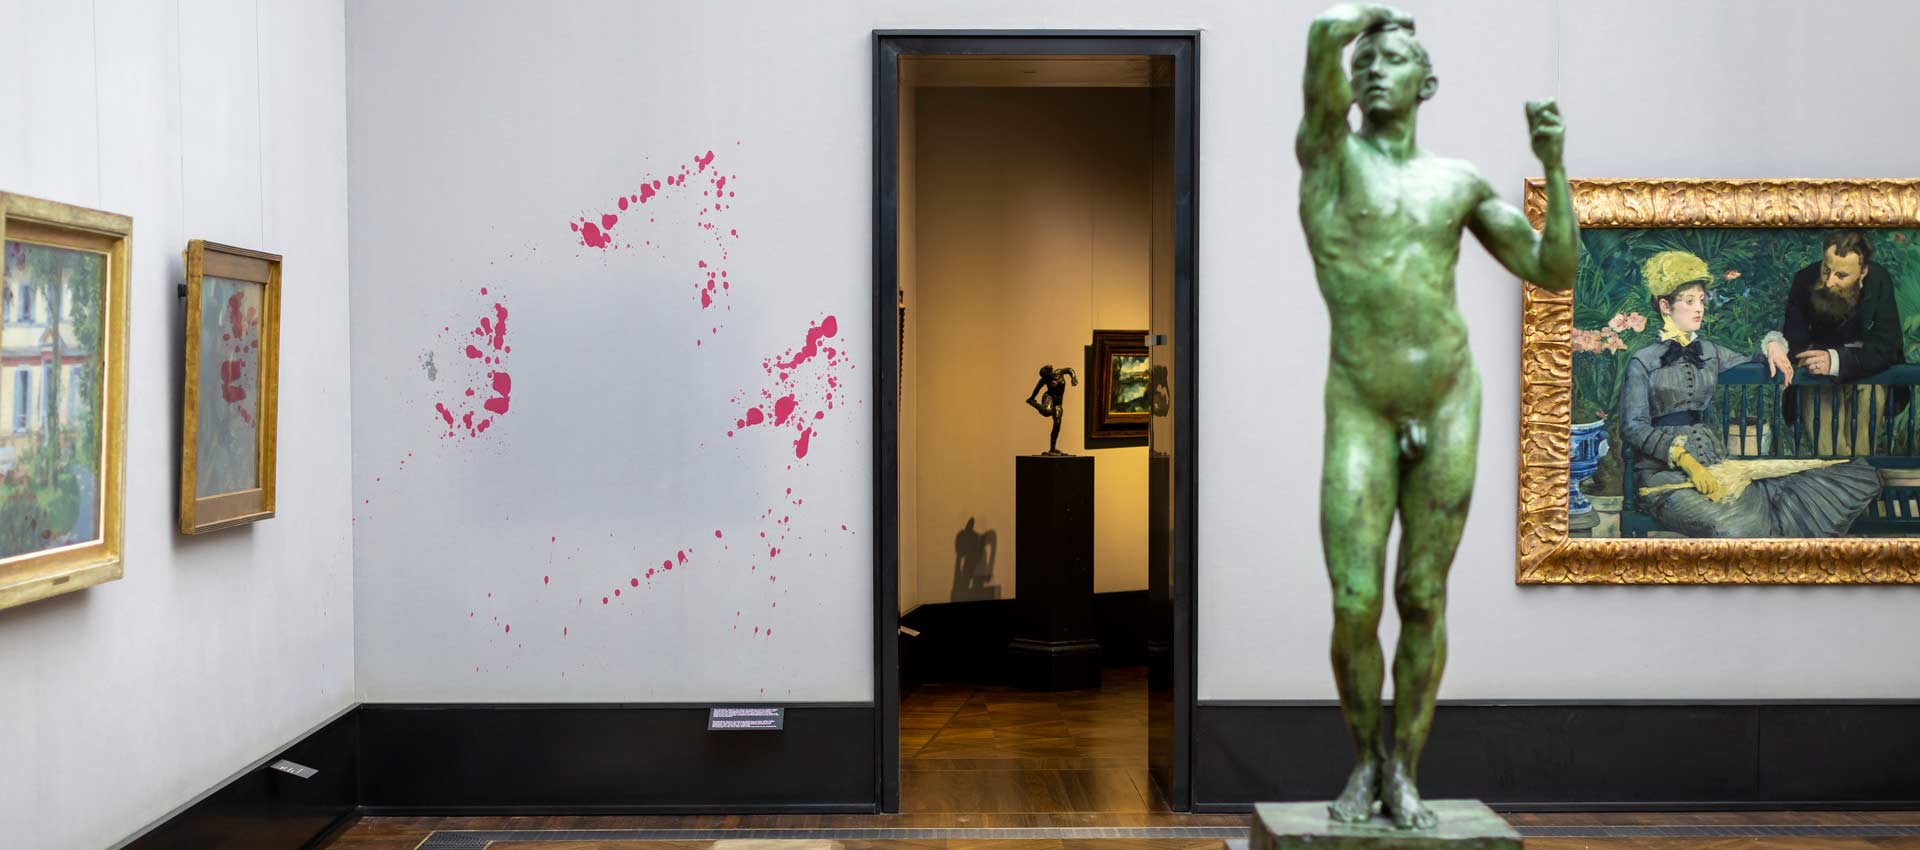 Blick in den Impressionistensaal der Alten Nationalgalerie mit roten Spritzern an der Wand